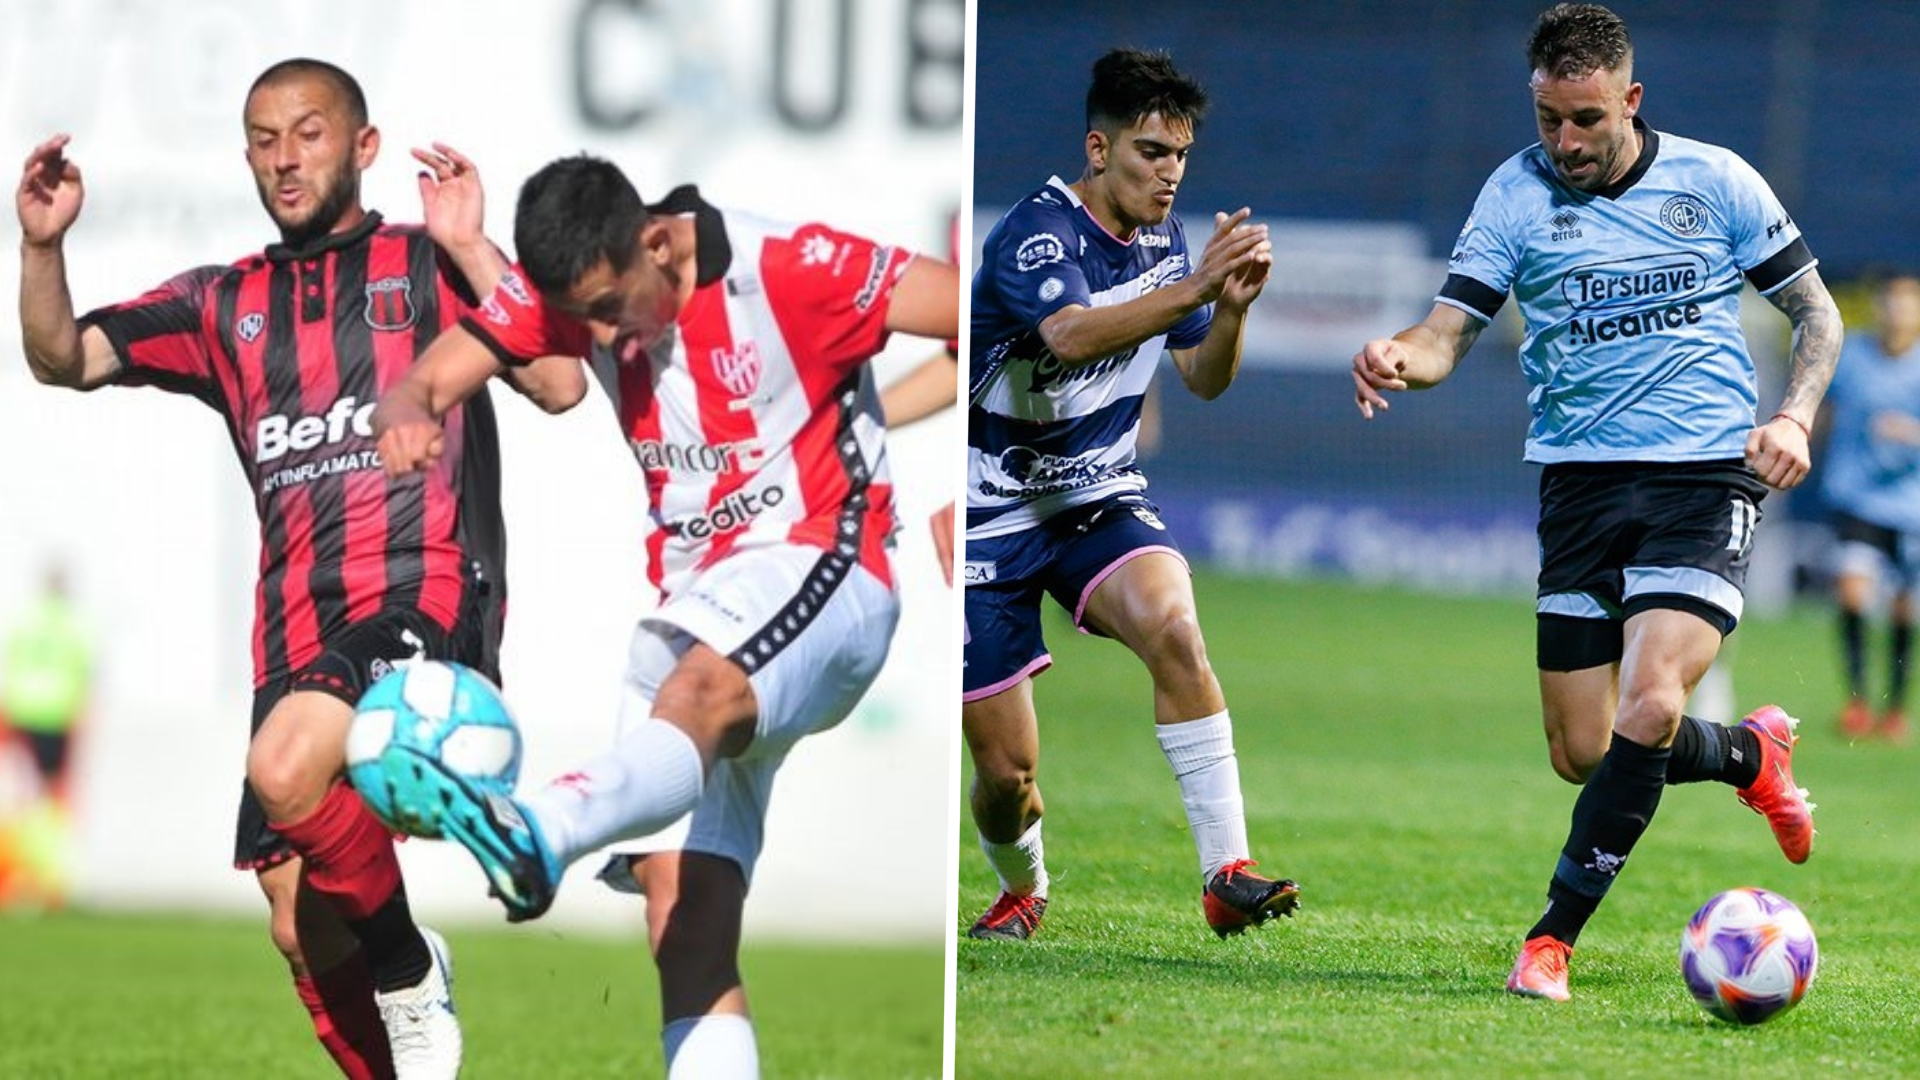 Ver EN VIVO Belgrano de Córdoba vs Defensores de Belgrano por TyC Sports, desde la Primera Nacional: streaming, TV y canal